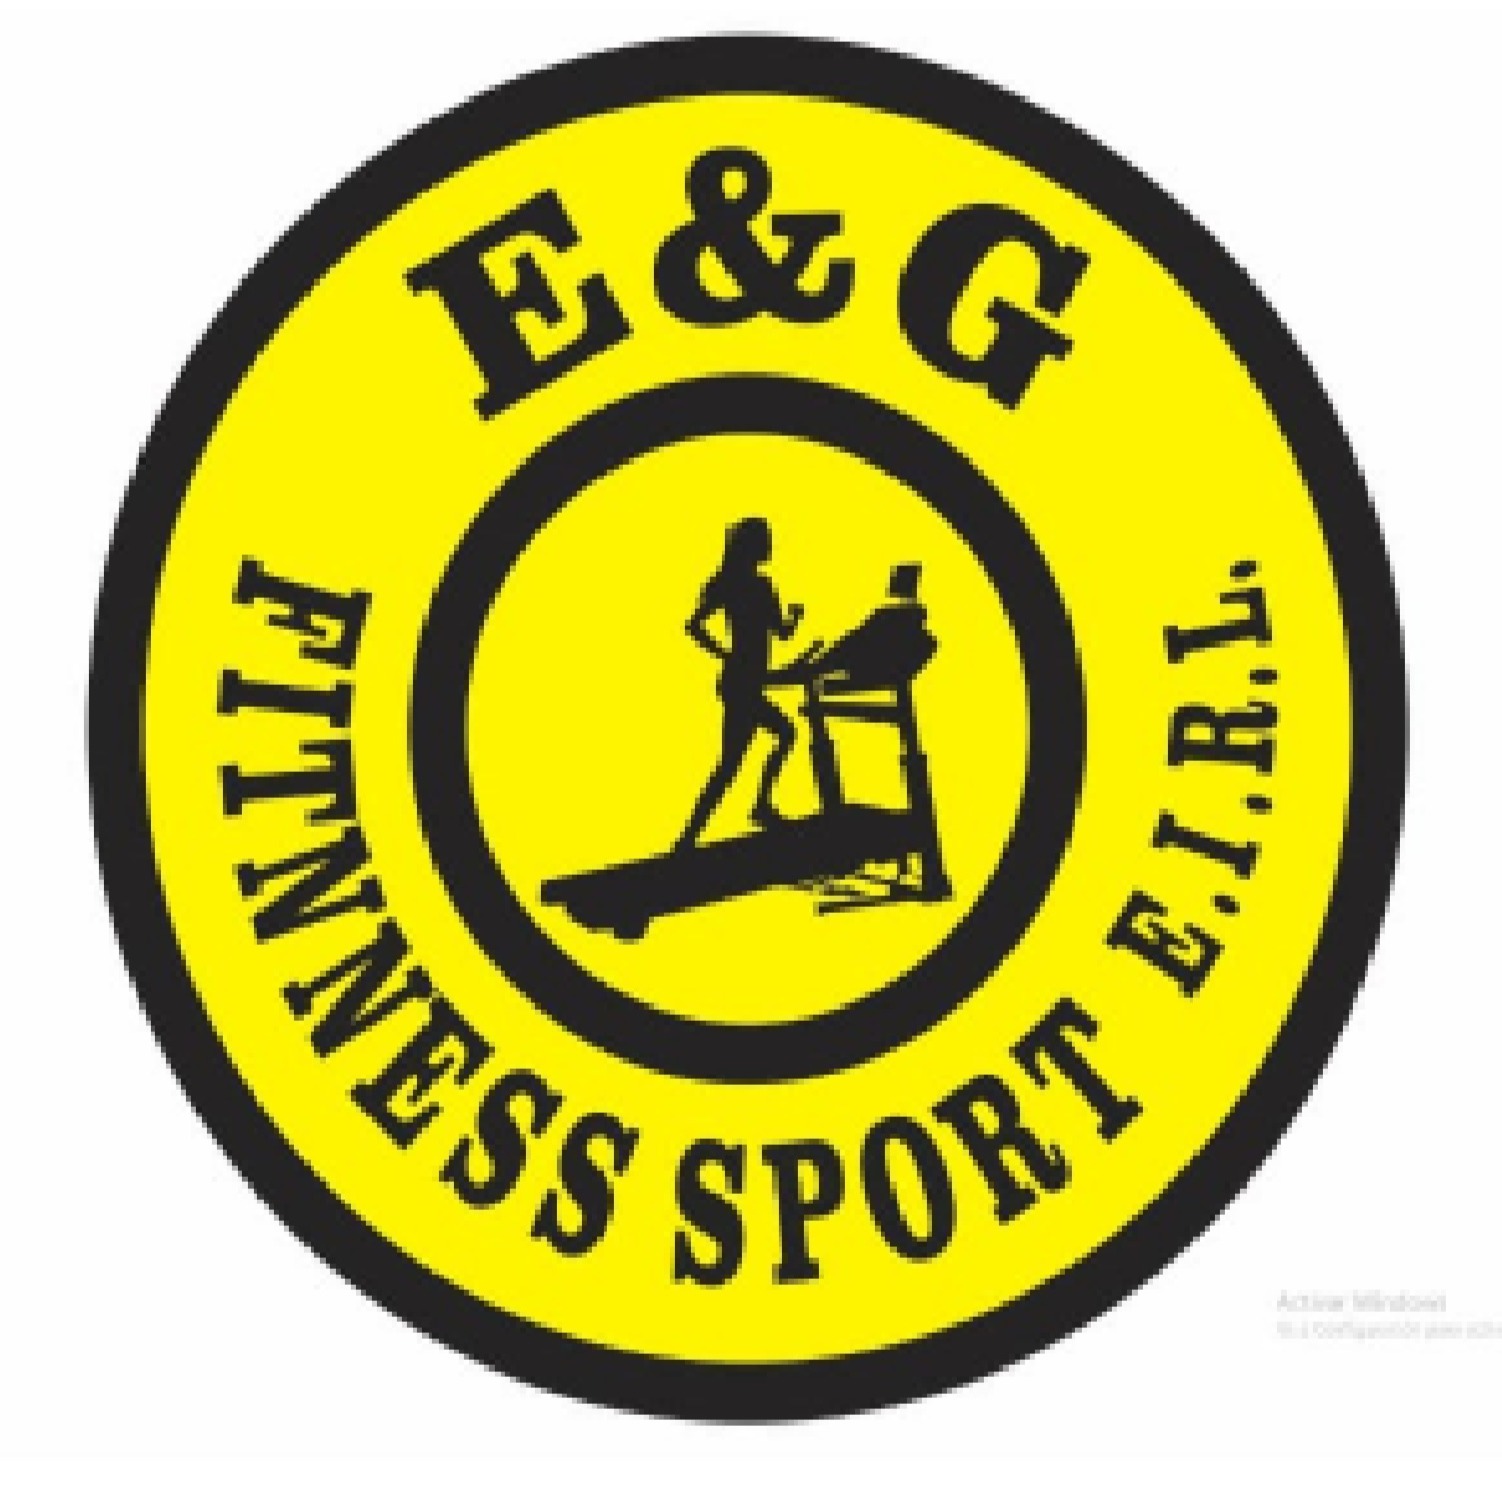 E&G FITNNESS SPORT E.I.R.L.